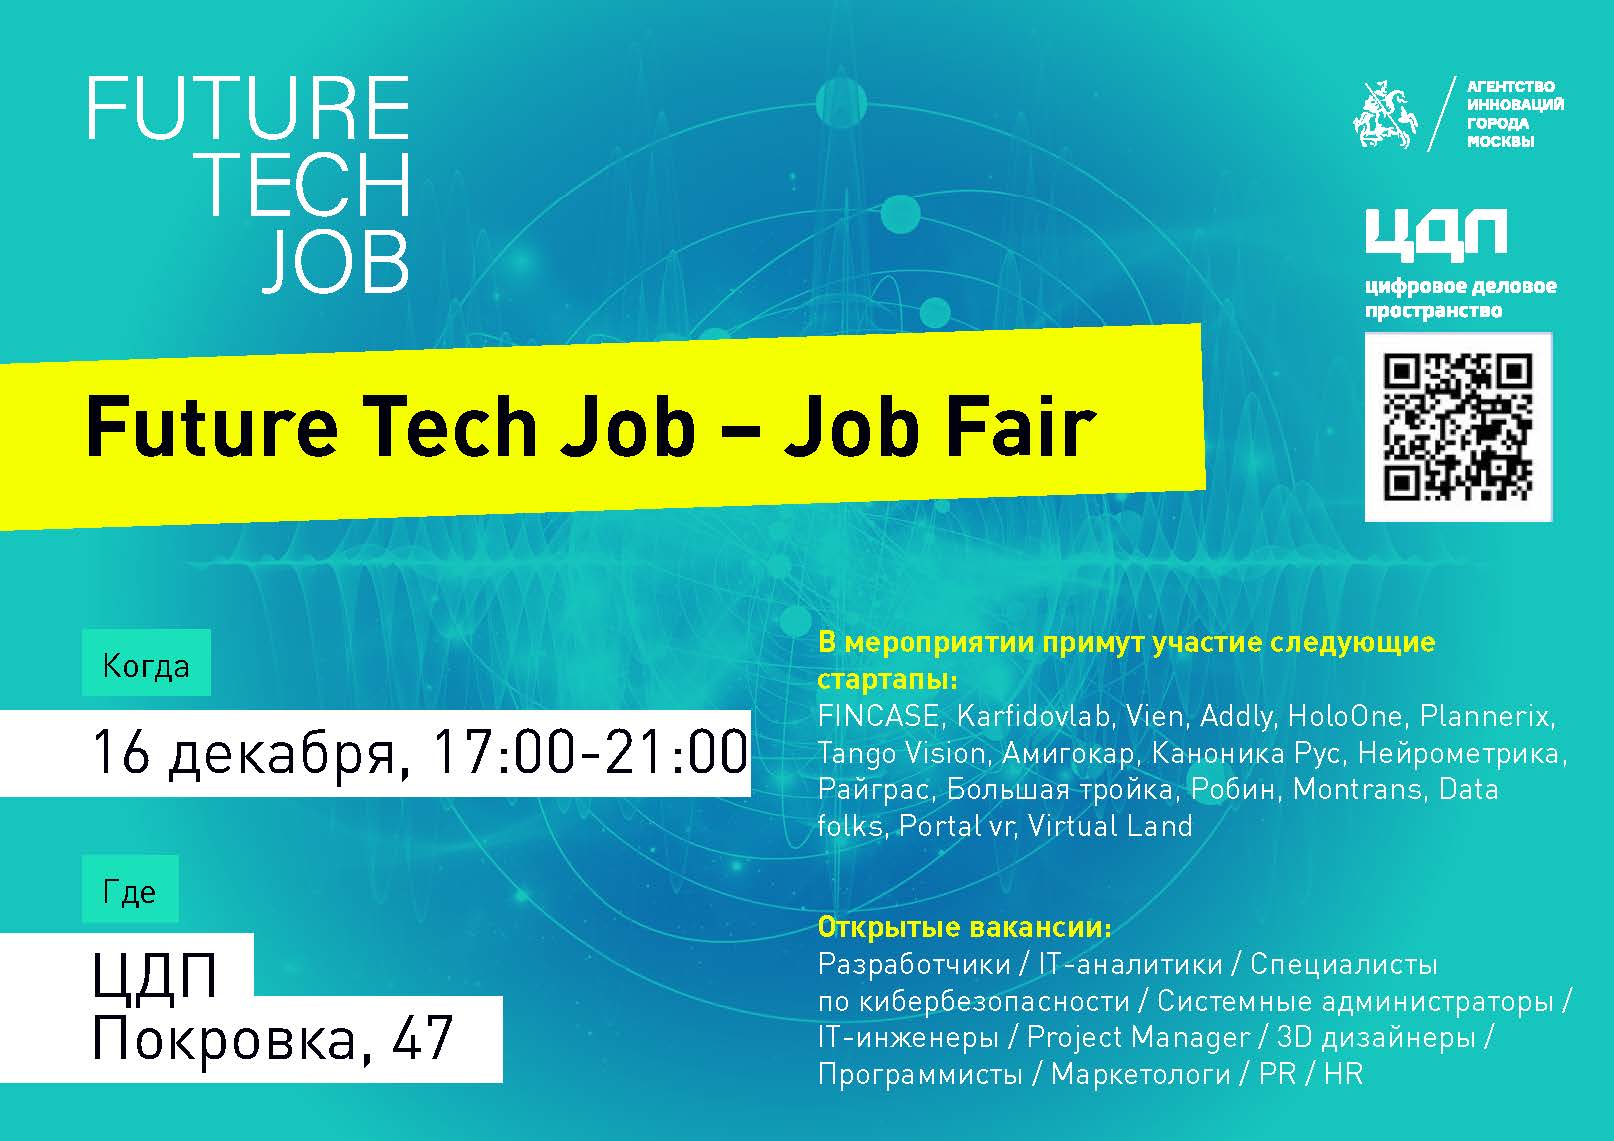 Агентство инноваций Москвы проводит масштабное мероприятие в рамках программы Future Tech Job